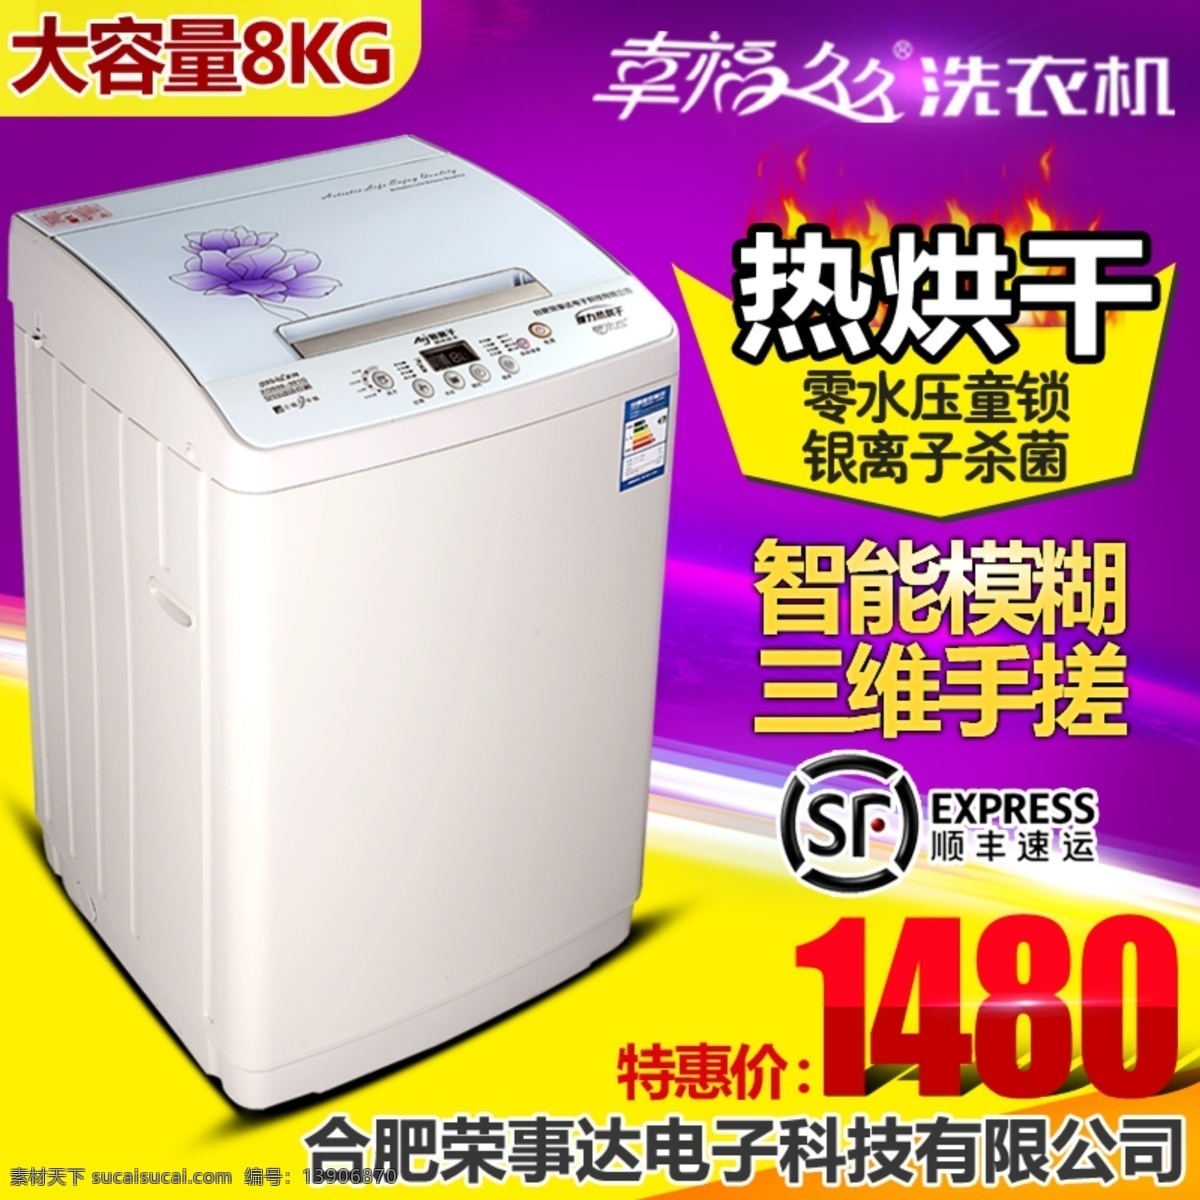 洗衣机 大容量 黄色背景 火焰 紫色背景 大容量8kg 热烘干 原创设计 原创淘宝设计